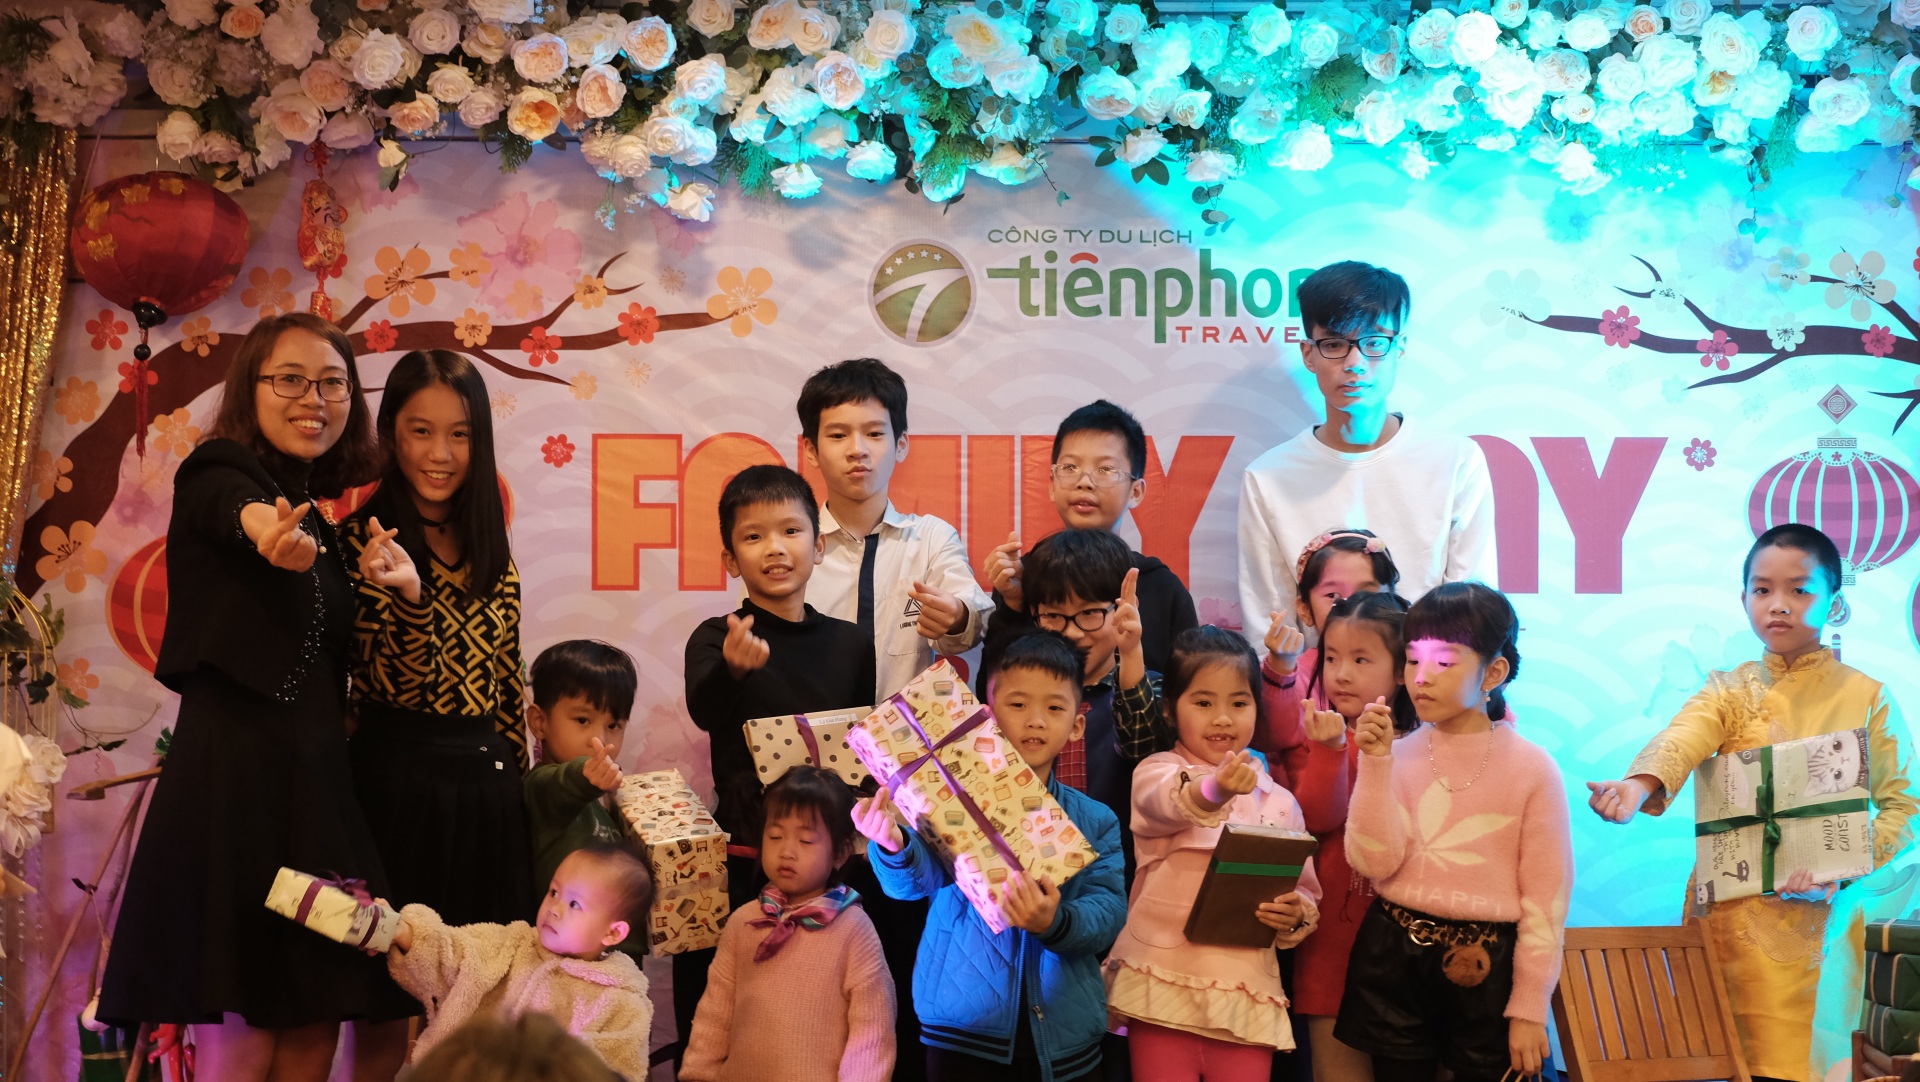 Family Day 2019 - Tiên Phong Travel